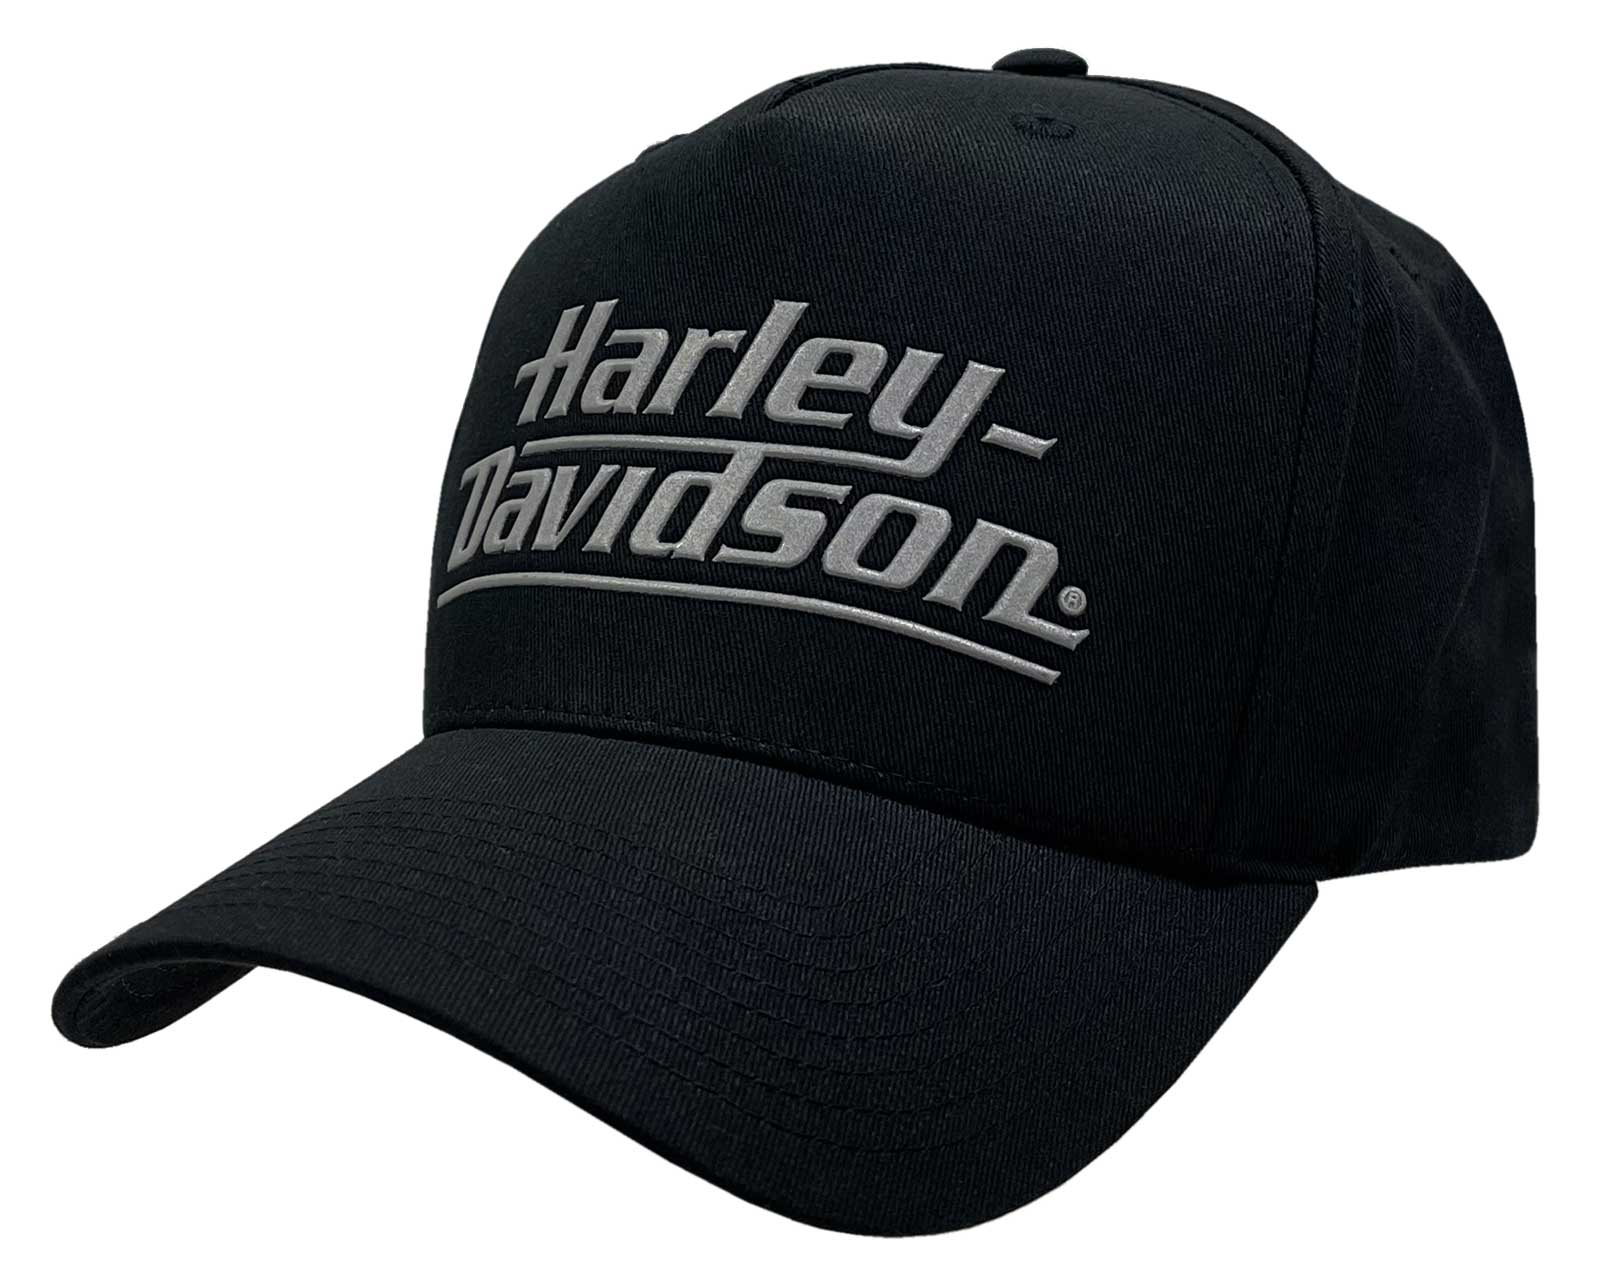  Harley-Davidson Men's Electric H-D Curved Bill